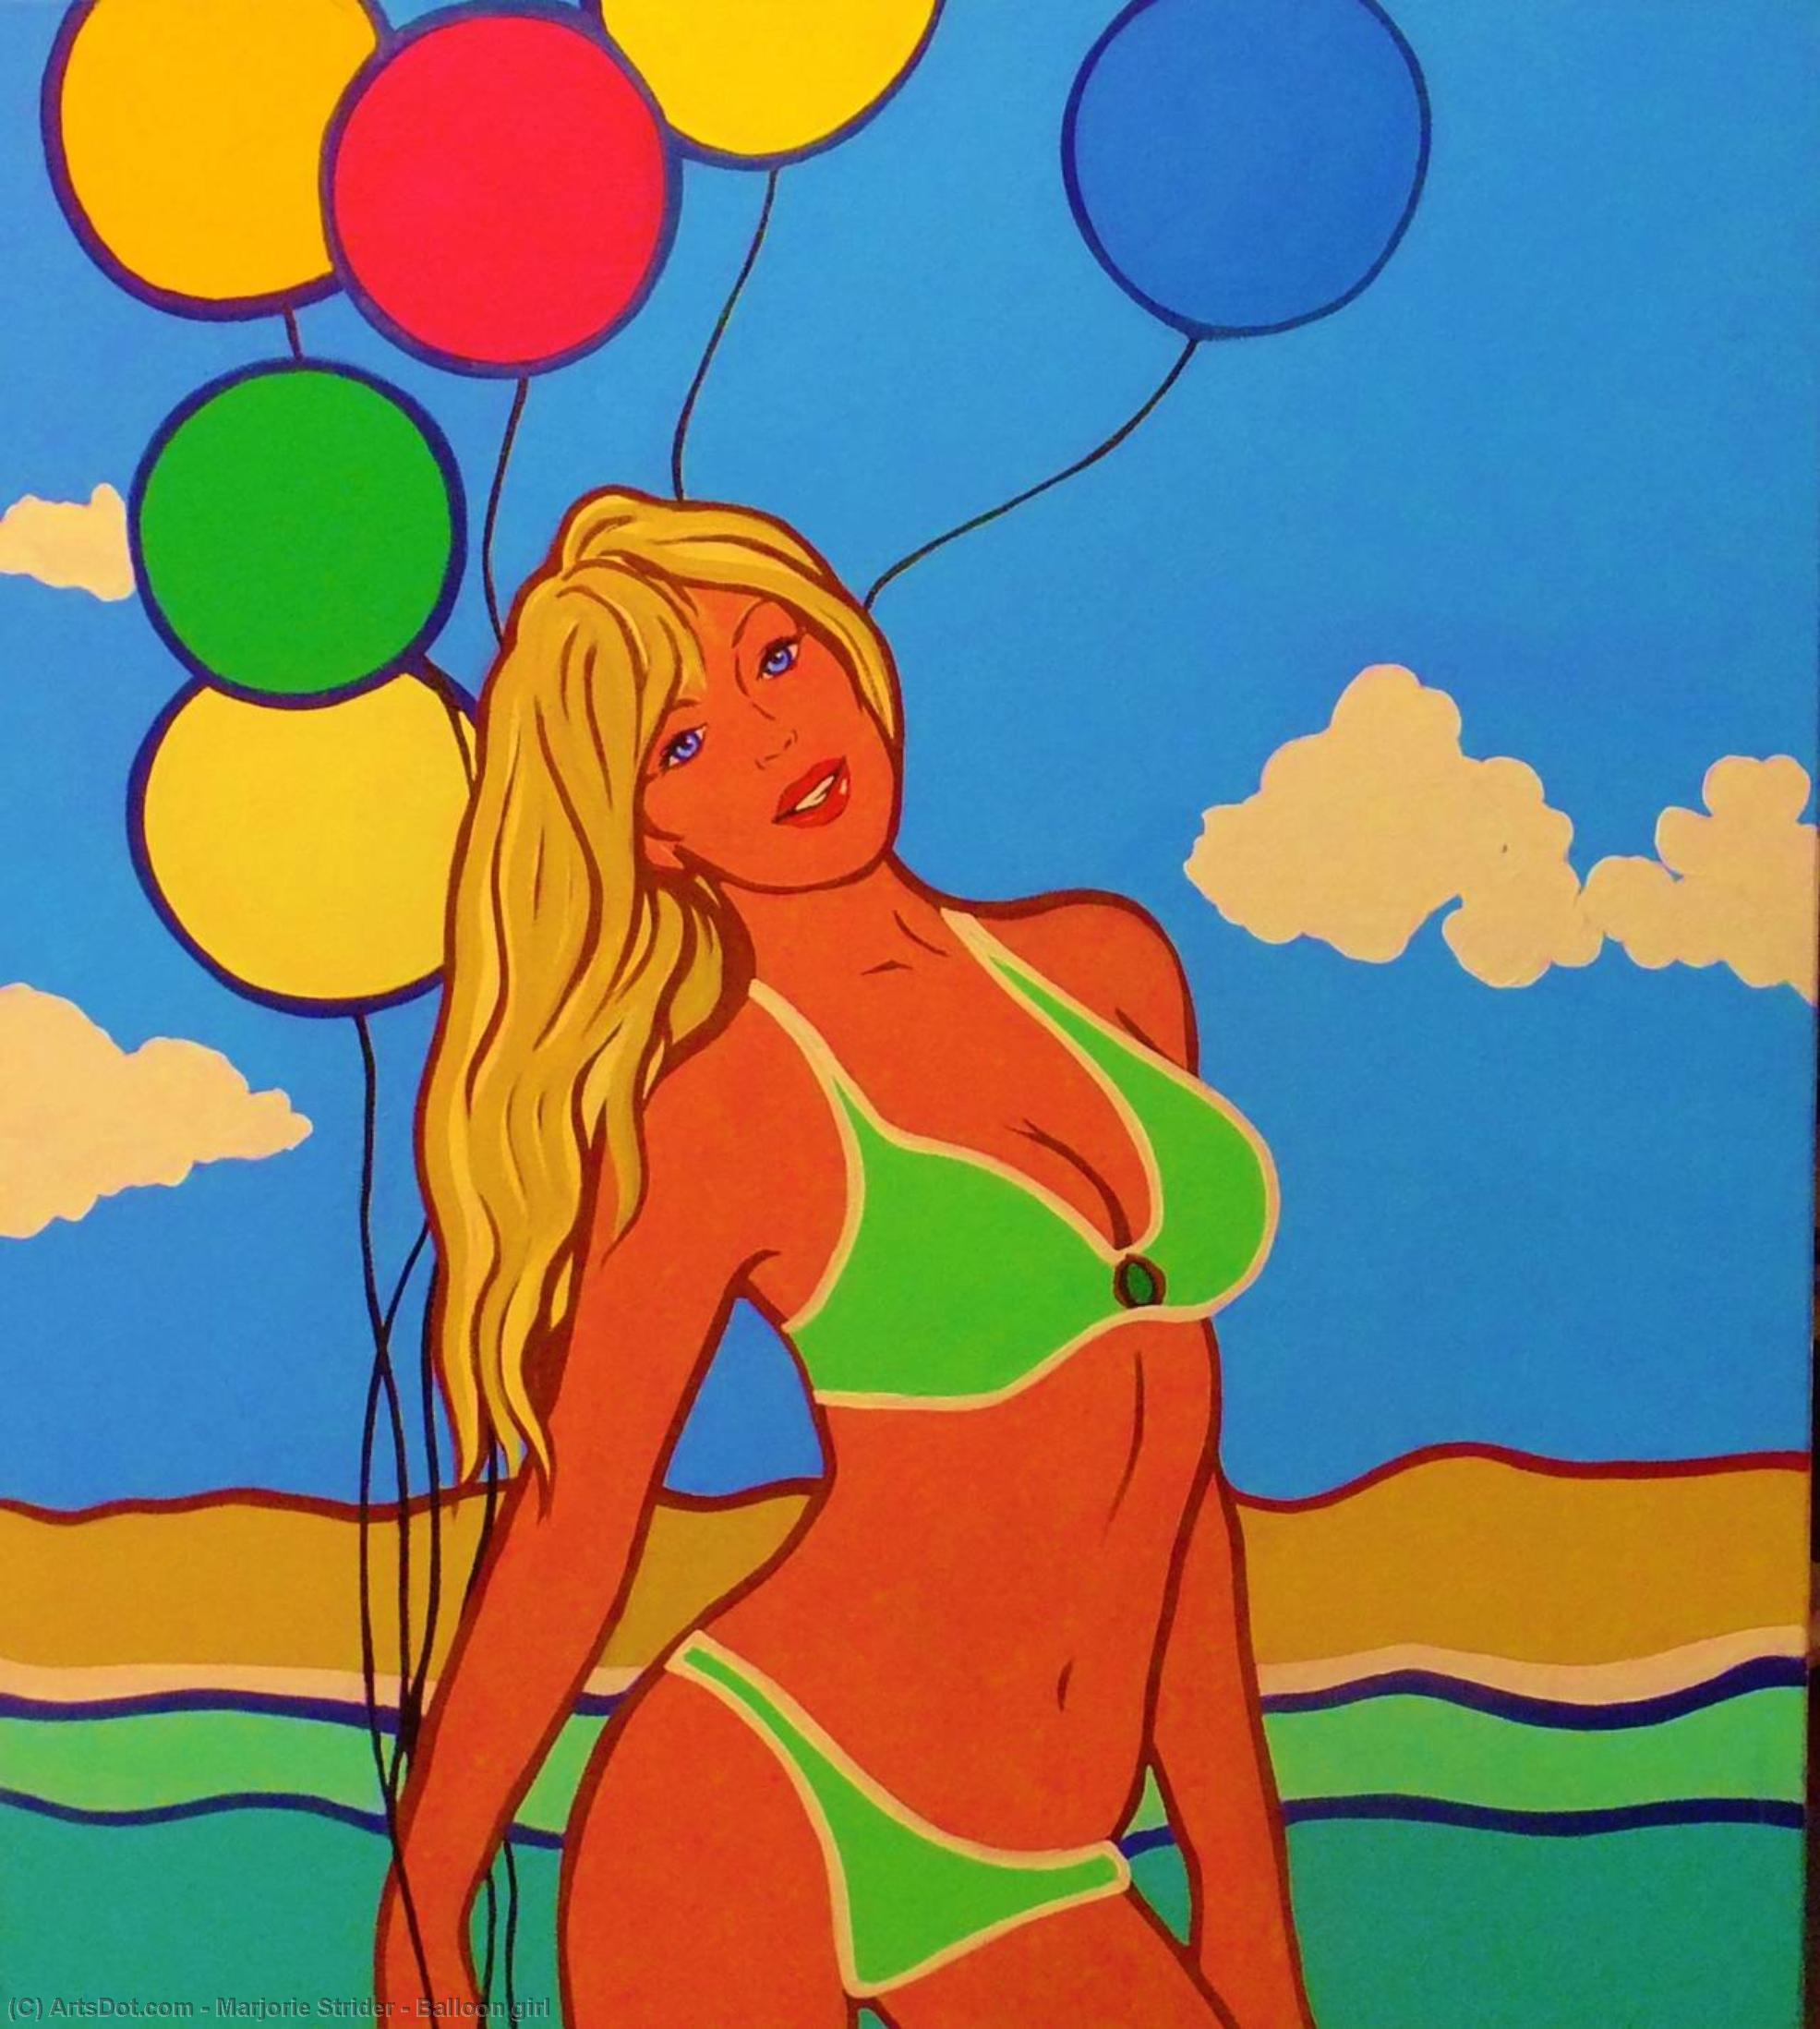 WikiOO.org - Encyclopedia of Fine Arts - Maalaus, taideteos Marjorie Strider - Balloon girl